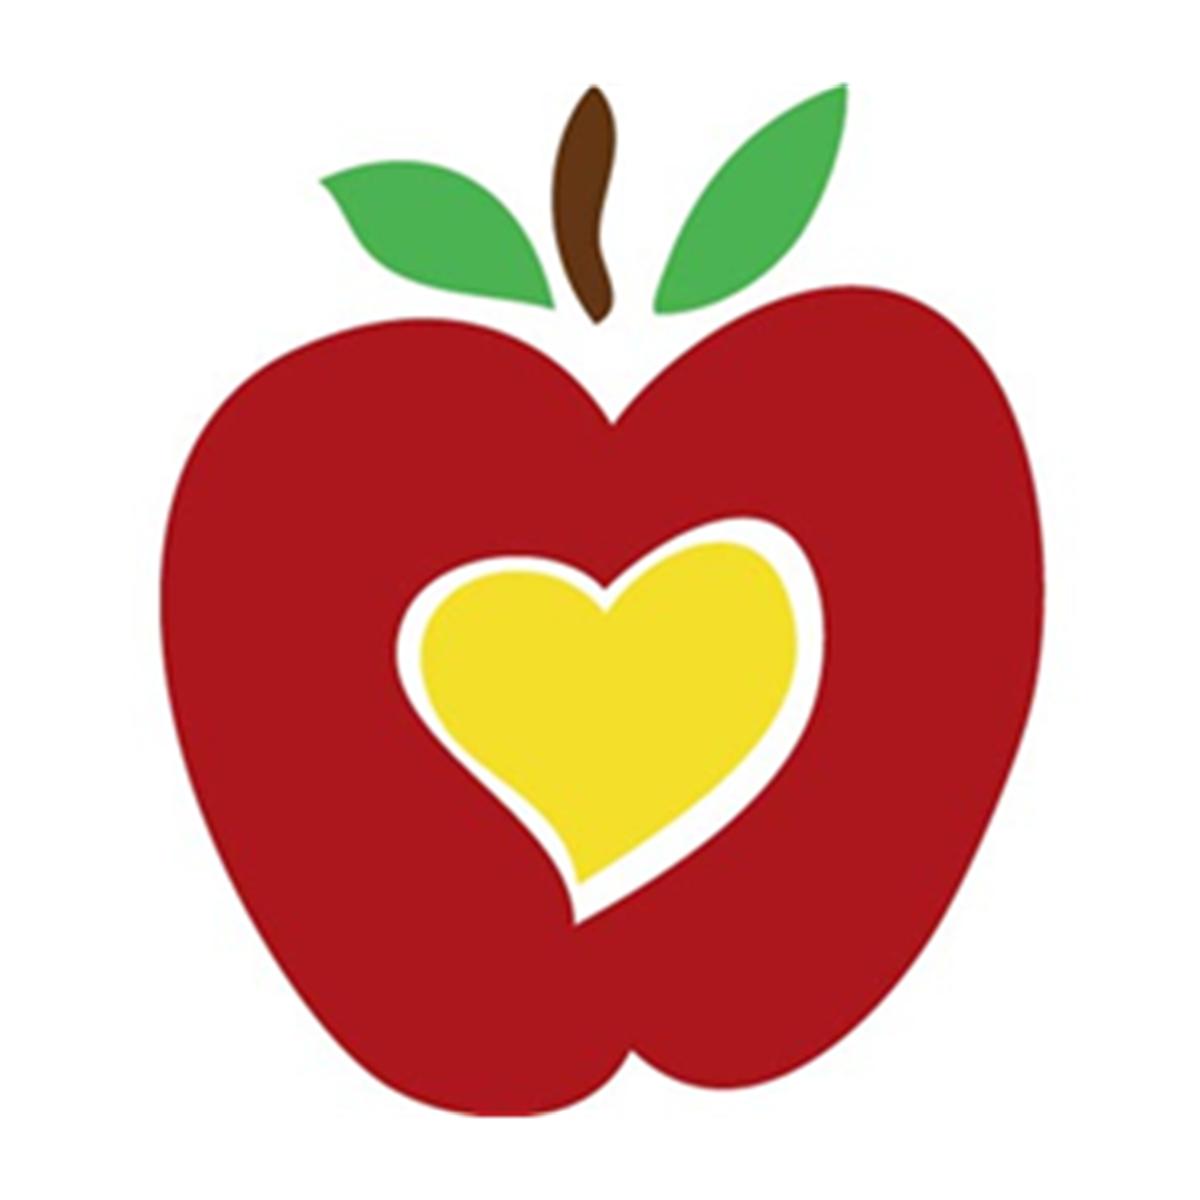 apple clipart for teachers - photo #21